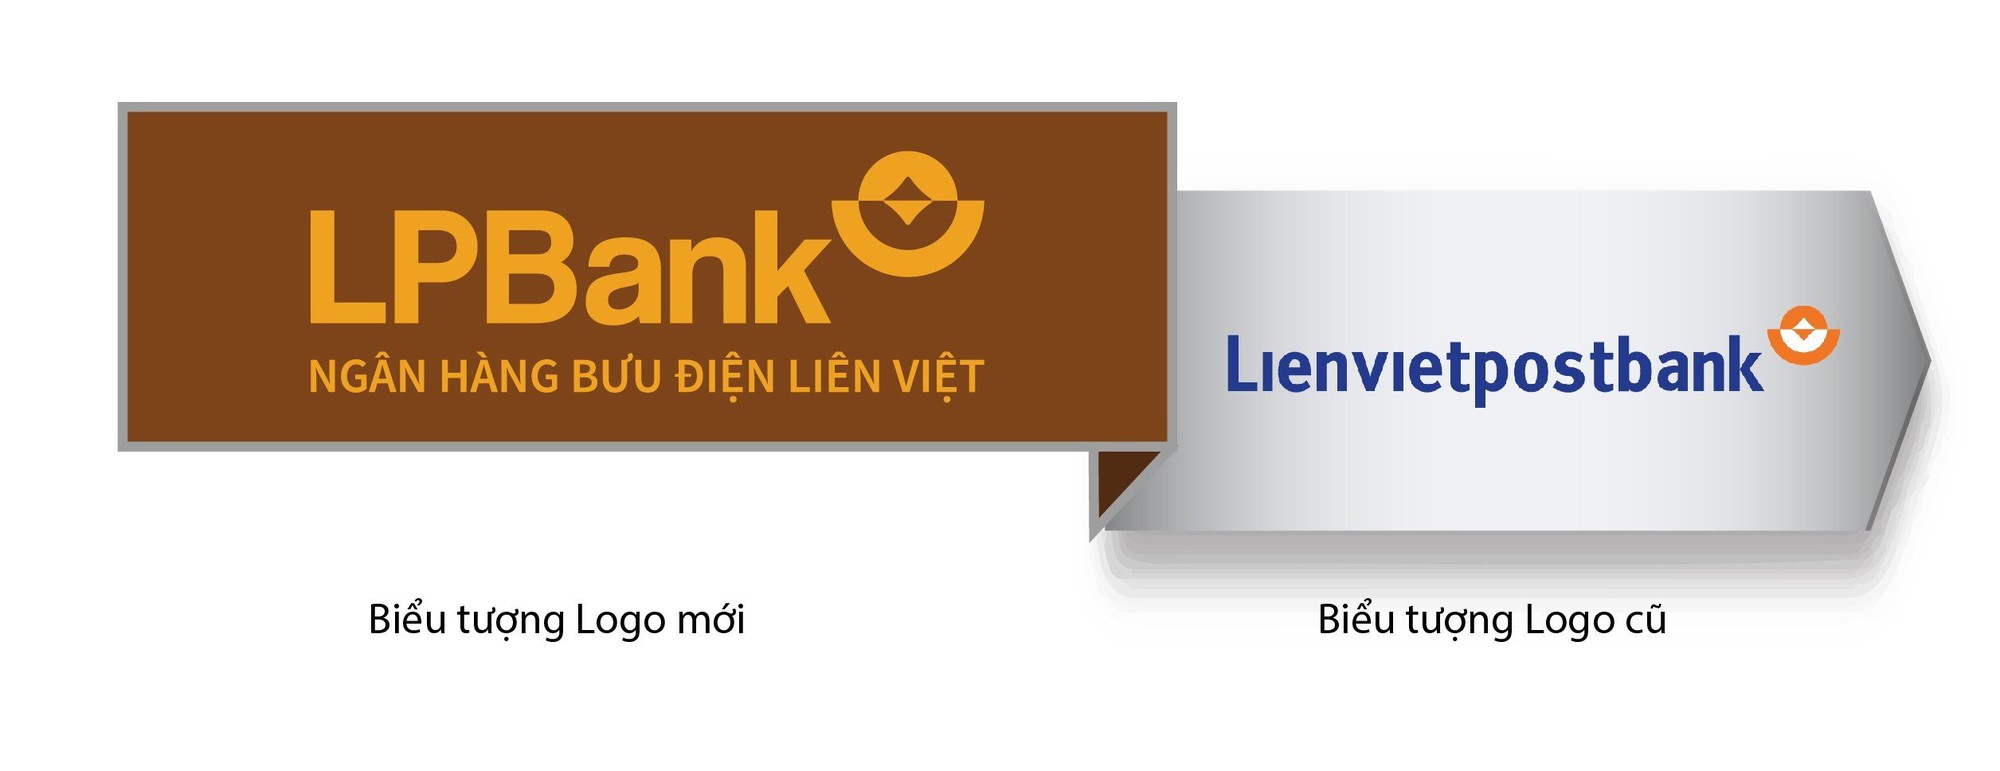 LPBank chính thức đổi nhận diện thương hiệu - Ảnh 1.